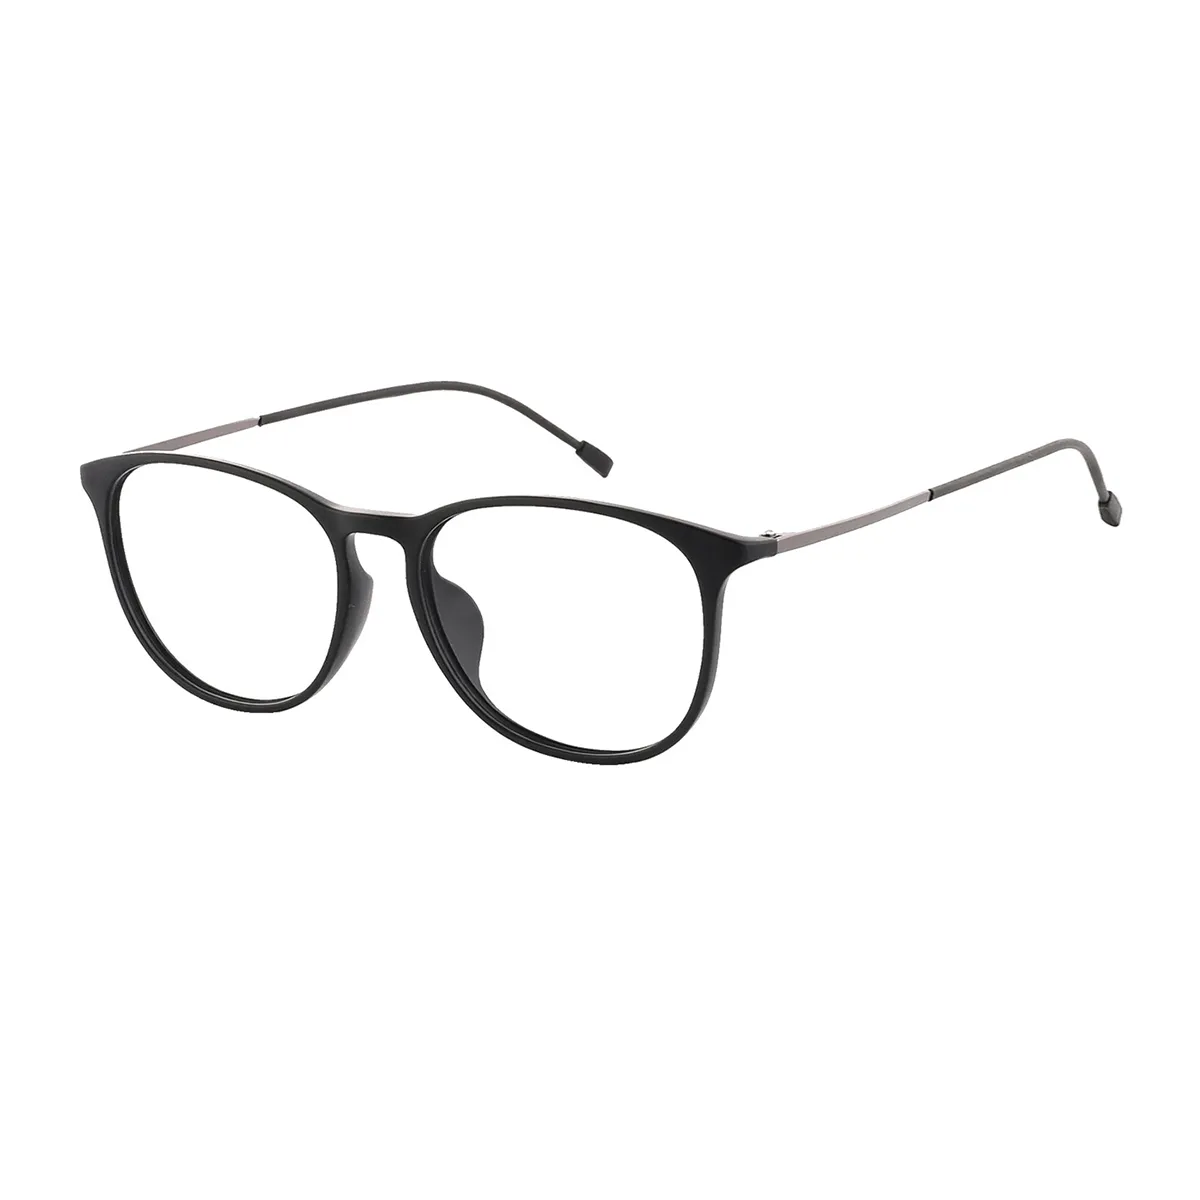 Daugherty - Oval Black-Gun Glasses for Men & Women - EFE